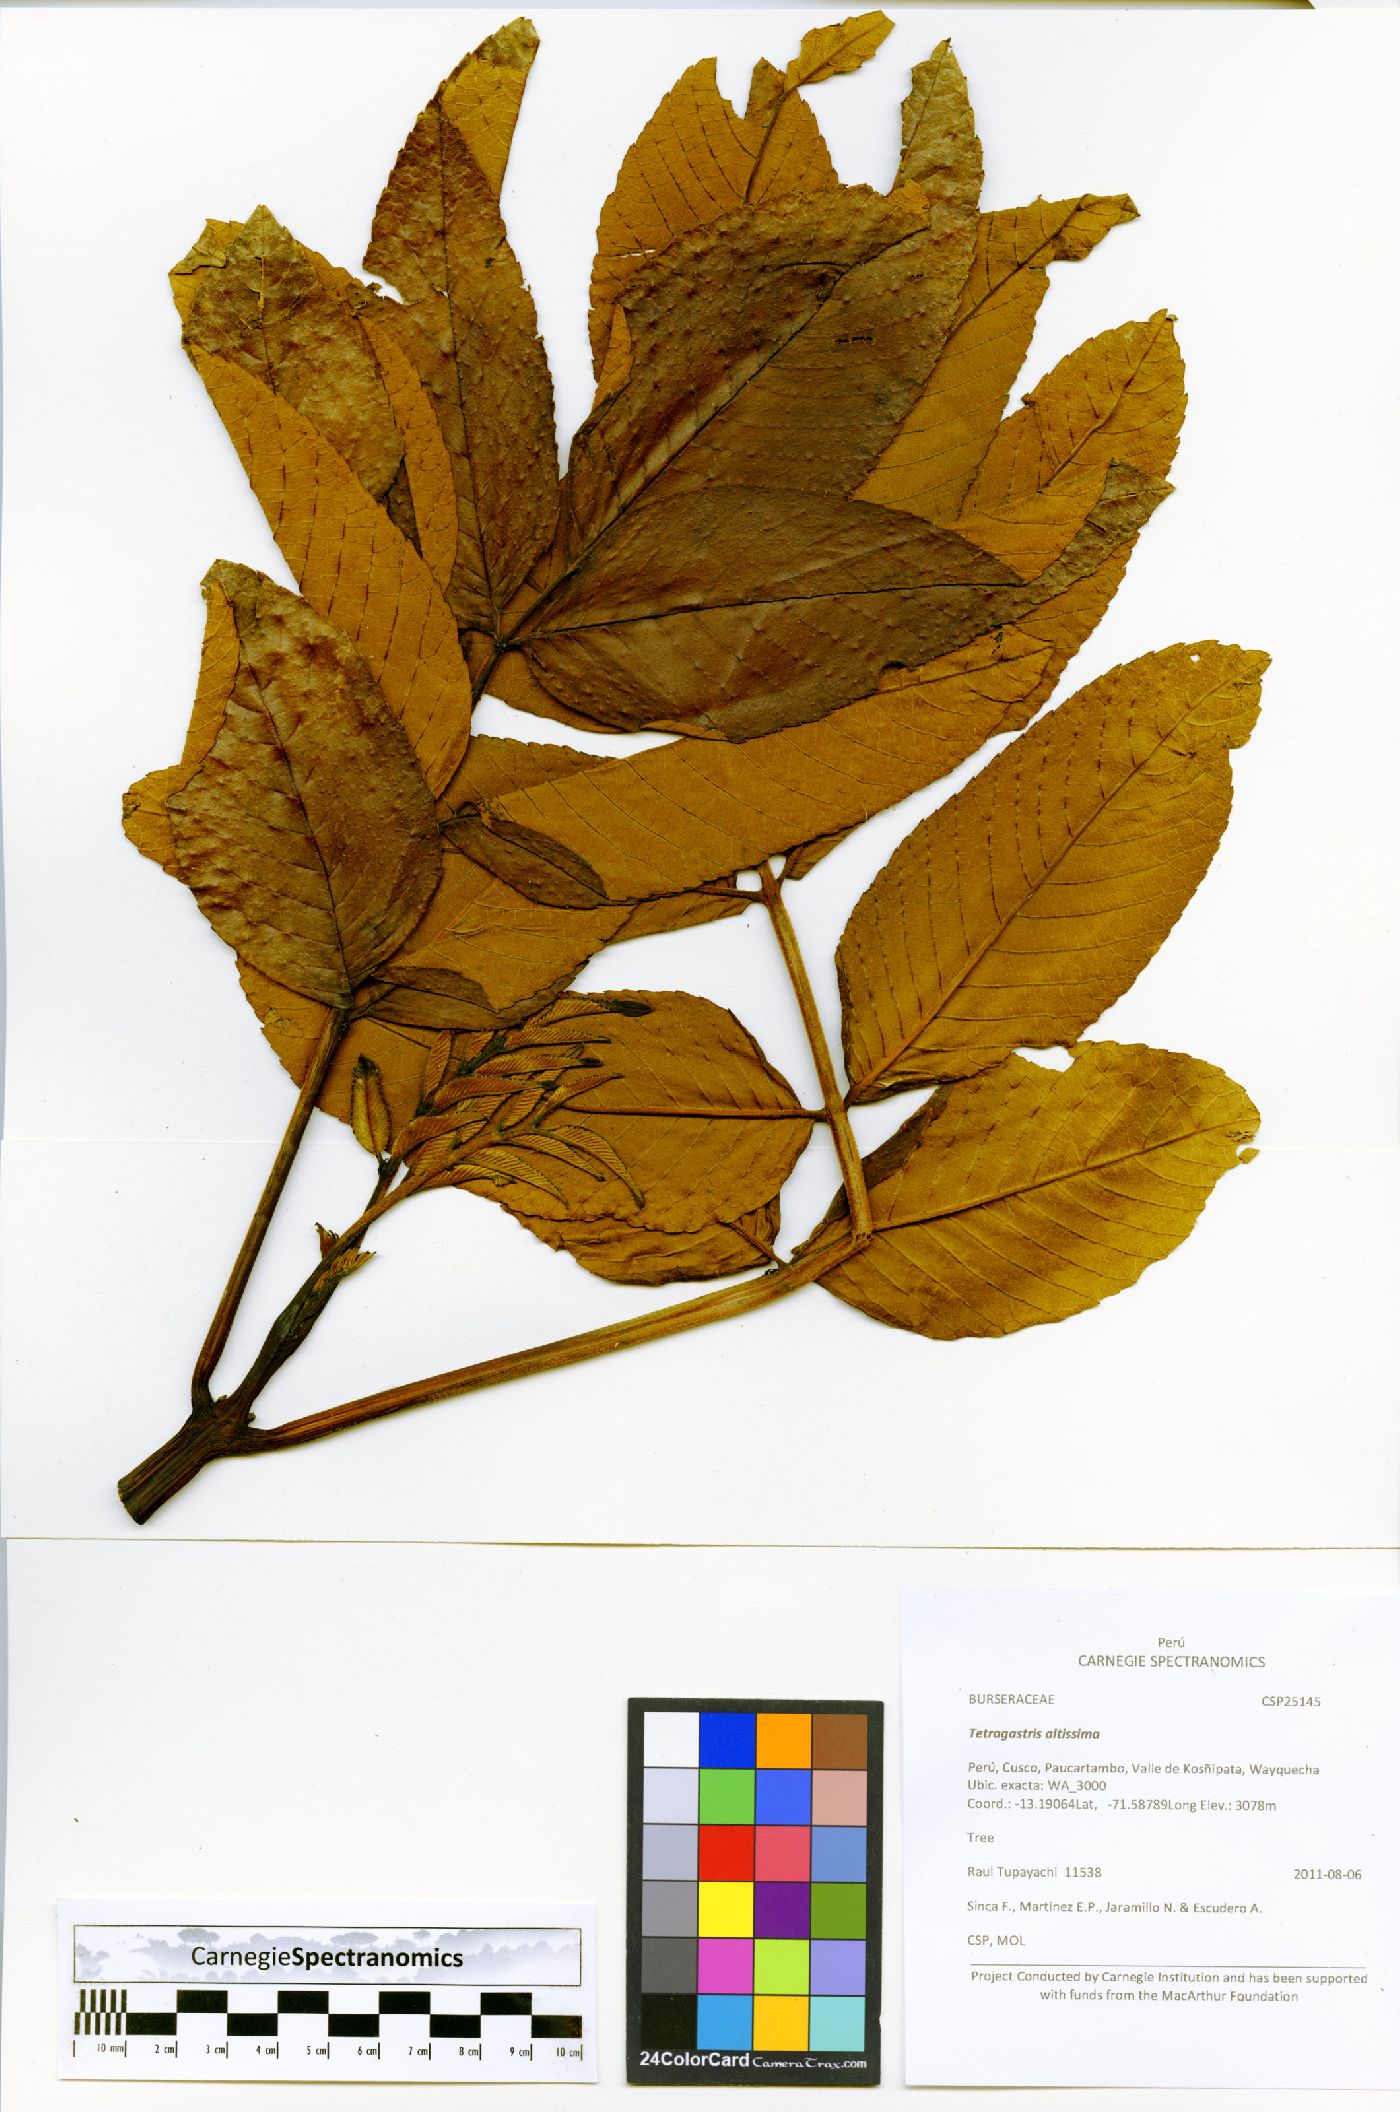 Brunellia cuzcoensis image